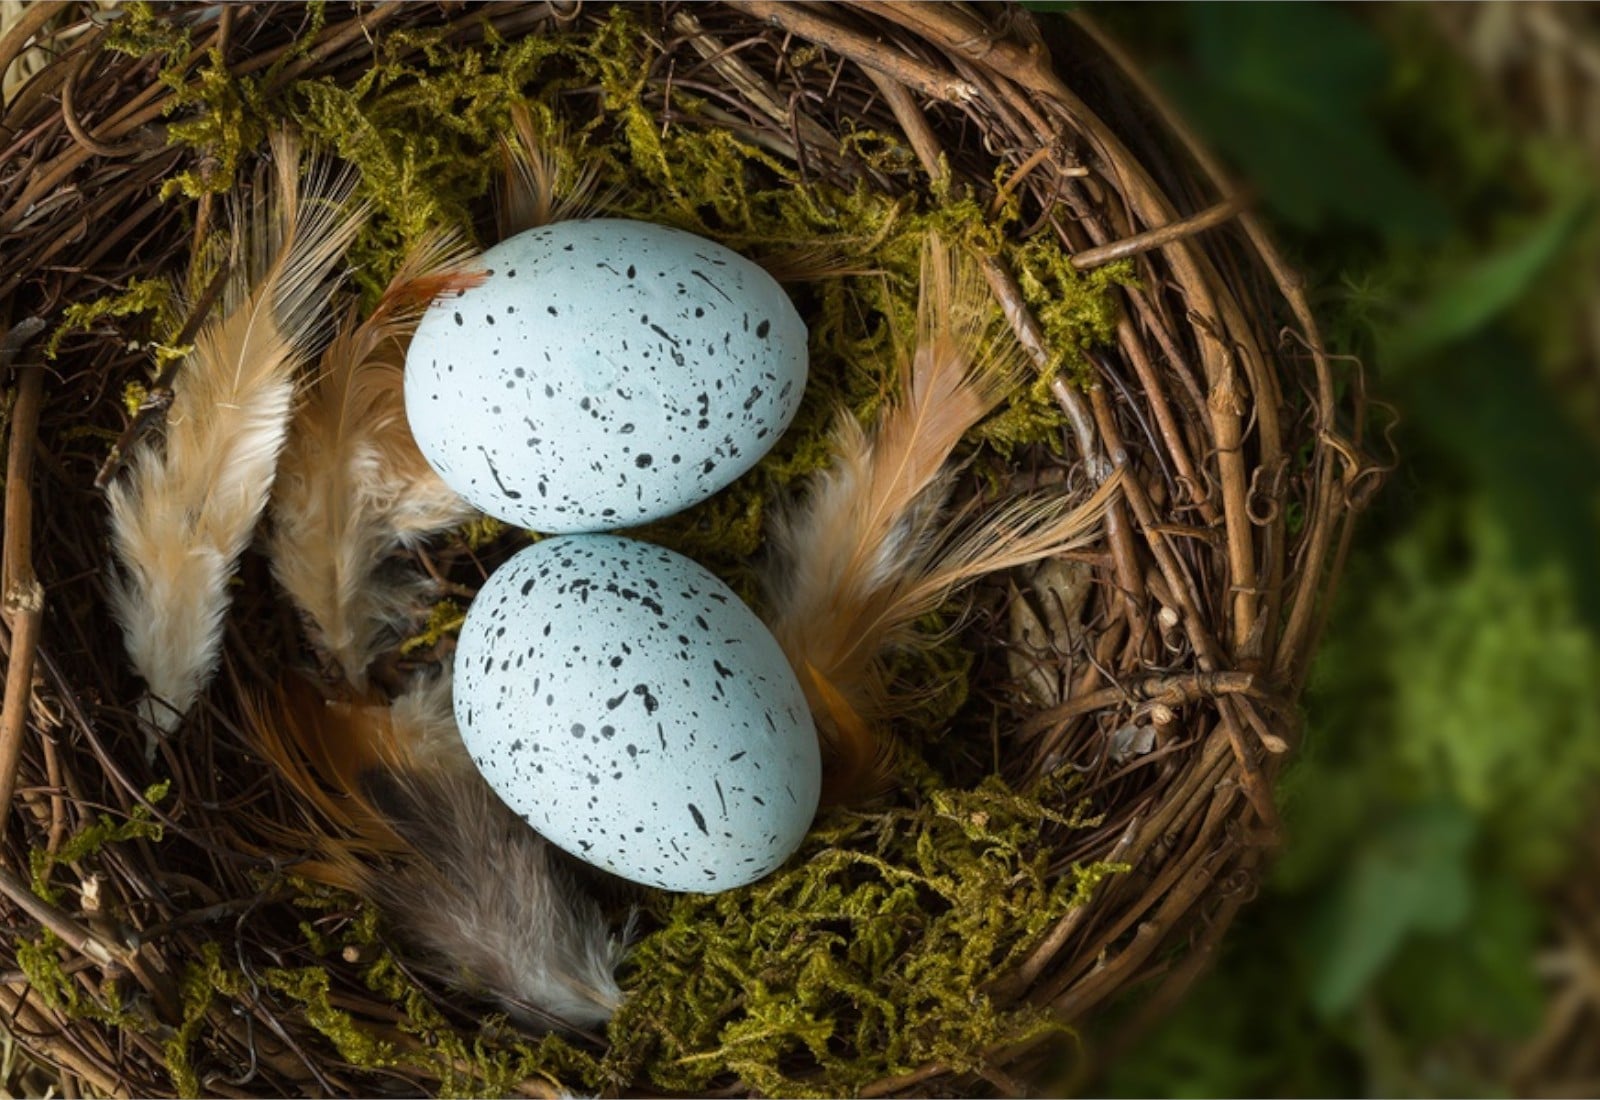 Your Retirement Nest Egg - Link Financial Advisory